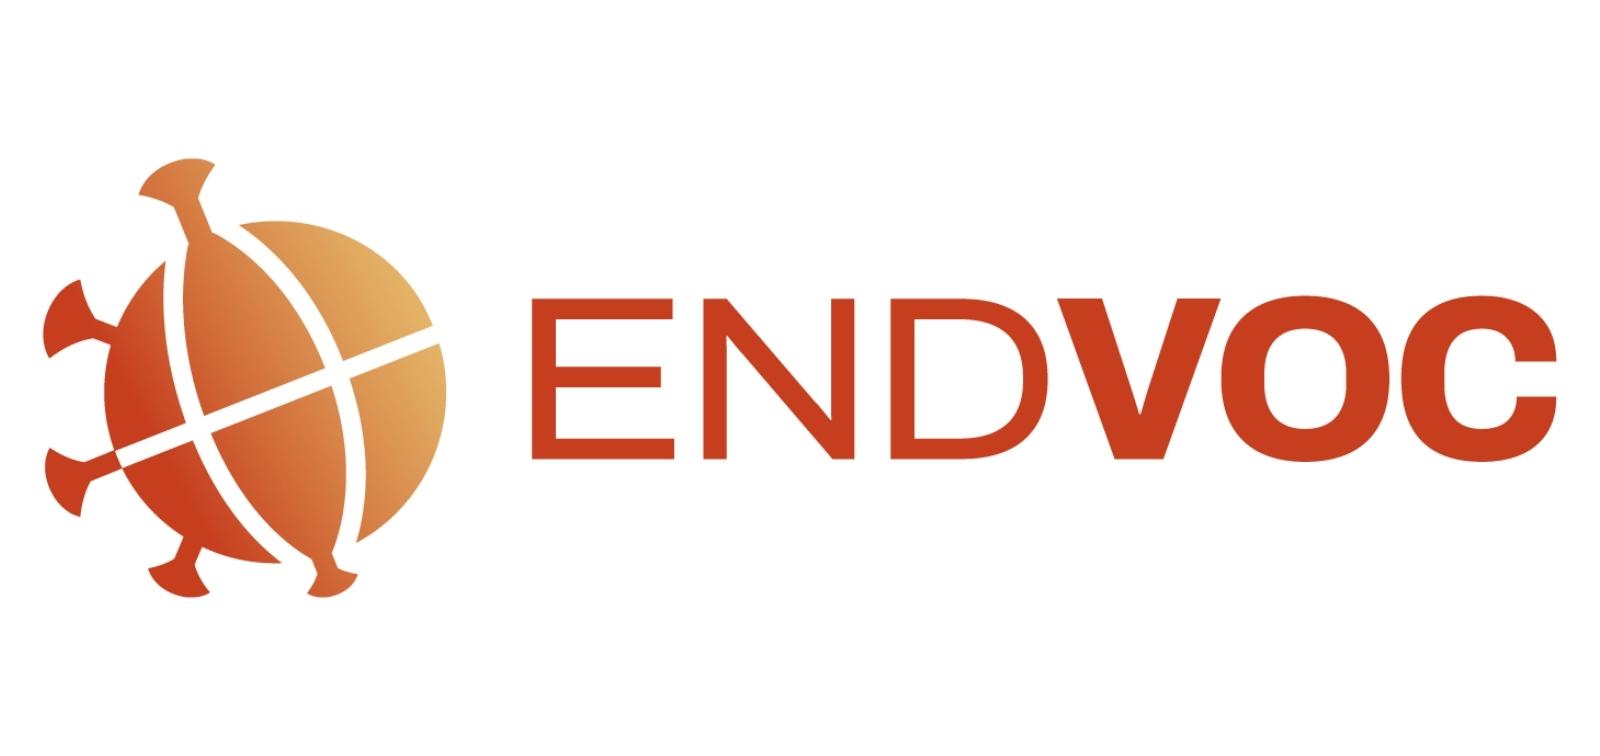 END-VOC project logo